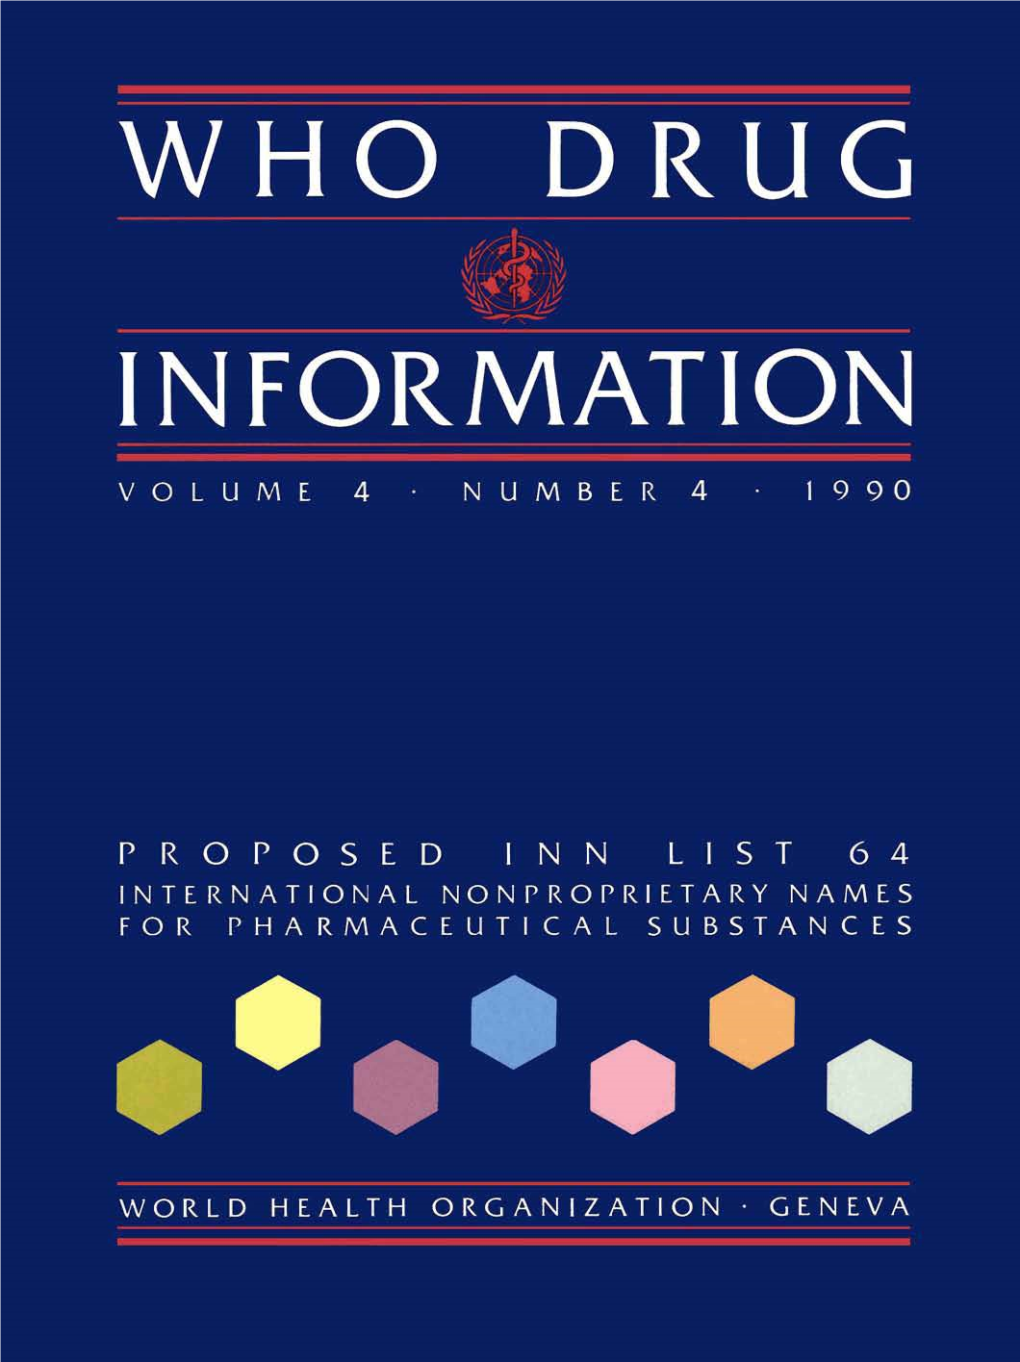 WHO Drug Information Vol. 04, No. 4, 1990